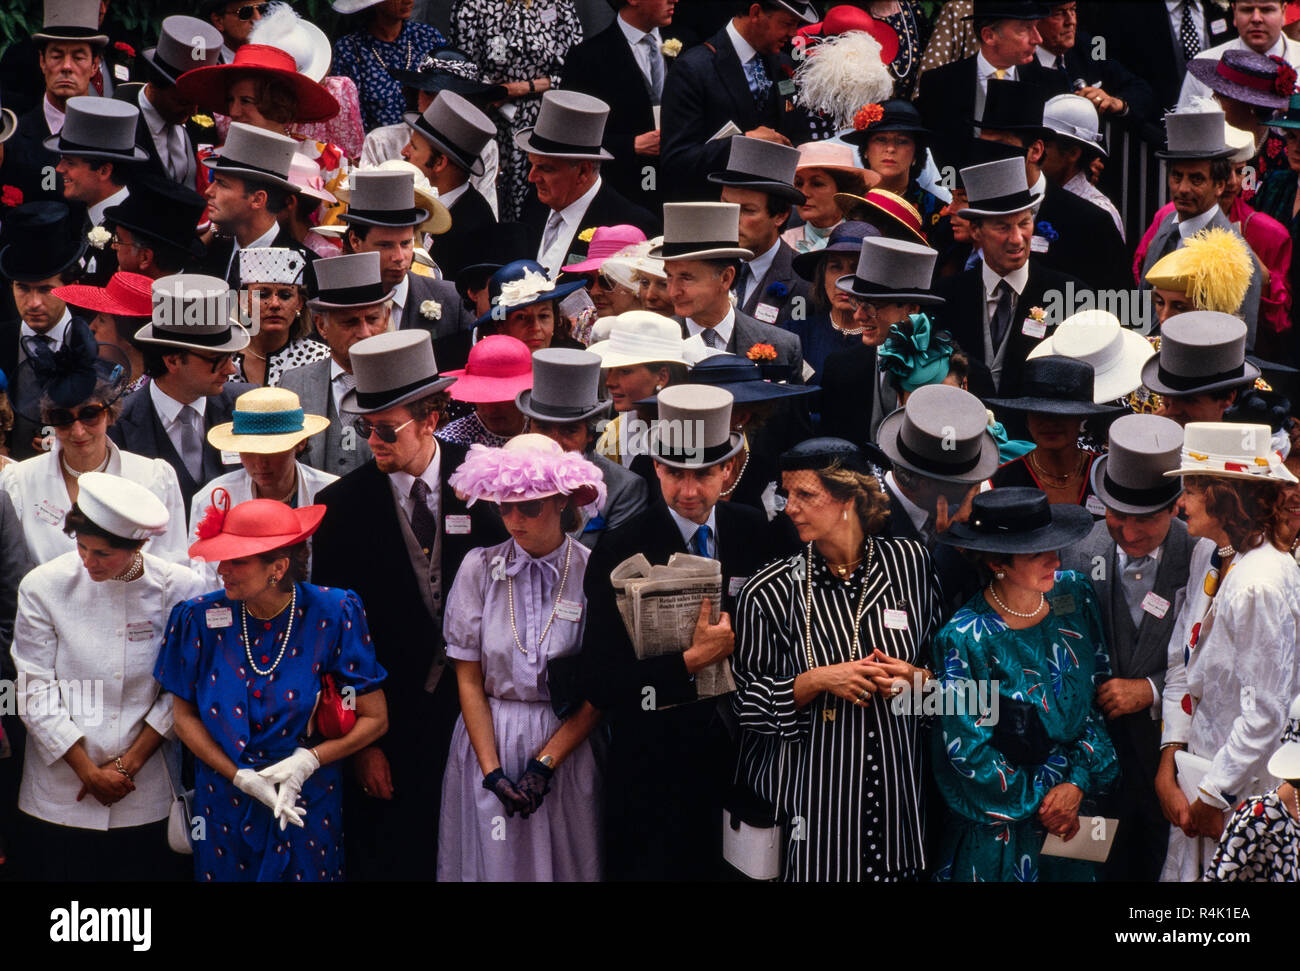 Les courses d'Ascot Angleterre UK 1986 numérisé en 2018 la famille royale britannique arriver et marcher environ à Royal Ascot en 1986 Membres du public vêtus de beaux chapeaux et chapeaux haut et la queue pour les hommes de Royal Ascot. Banque D'Images